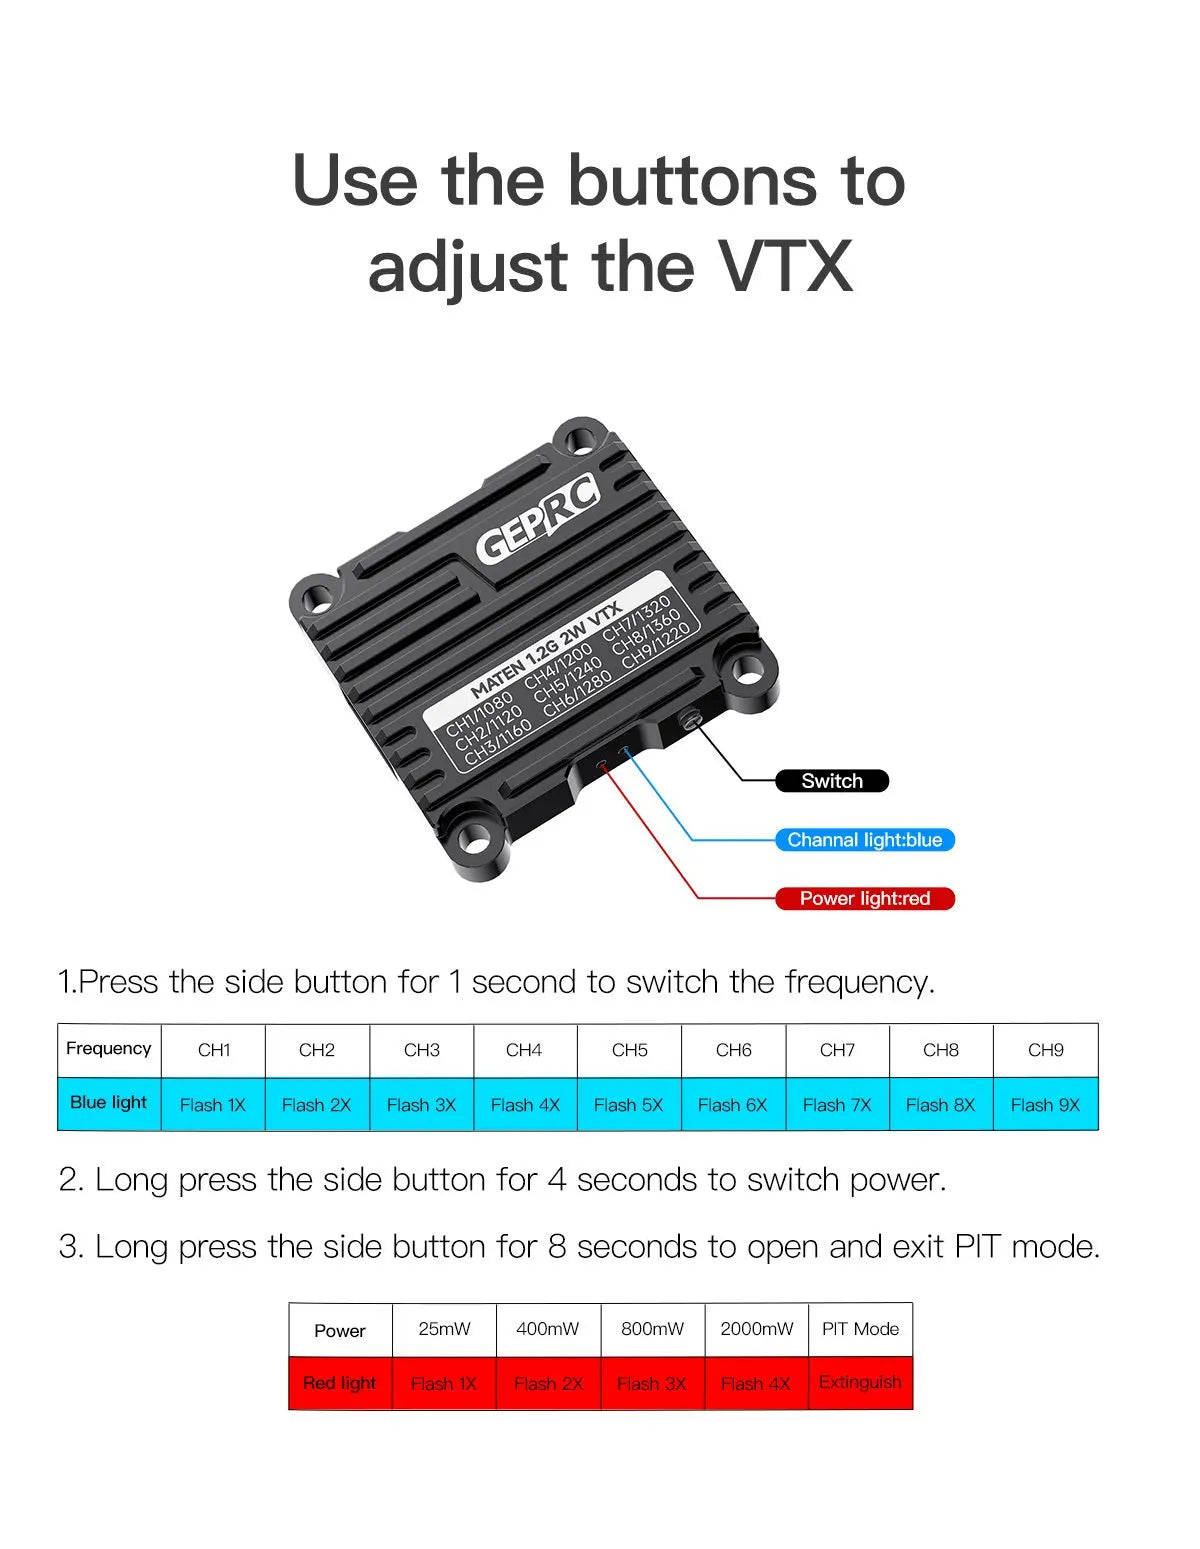 GEPRC MATEN 1.2G 2W VTX, use the buttons to adjust the VTX  Switch Channal light blue Power light